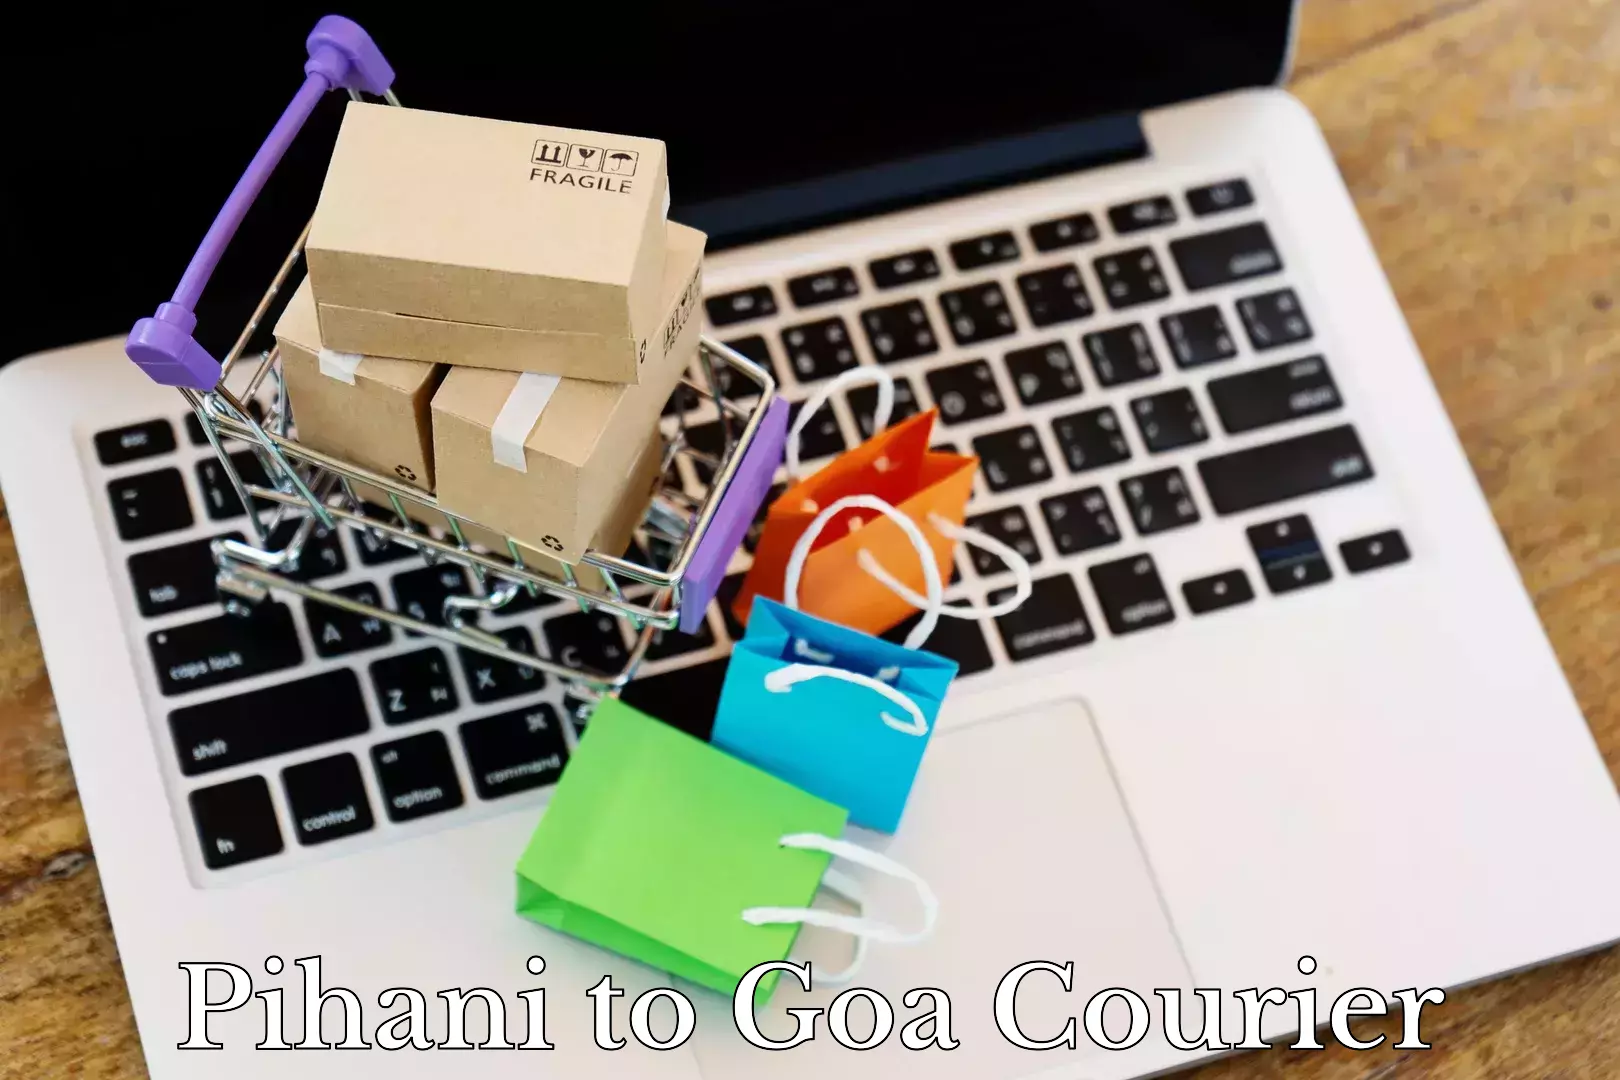 Door-to-door baggage service Pihani to Goa University